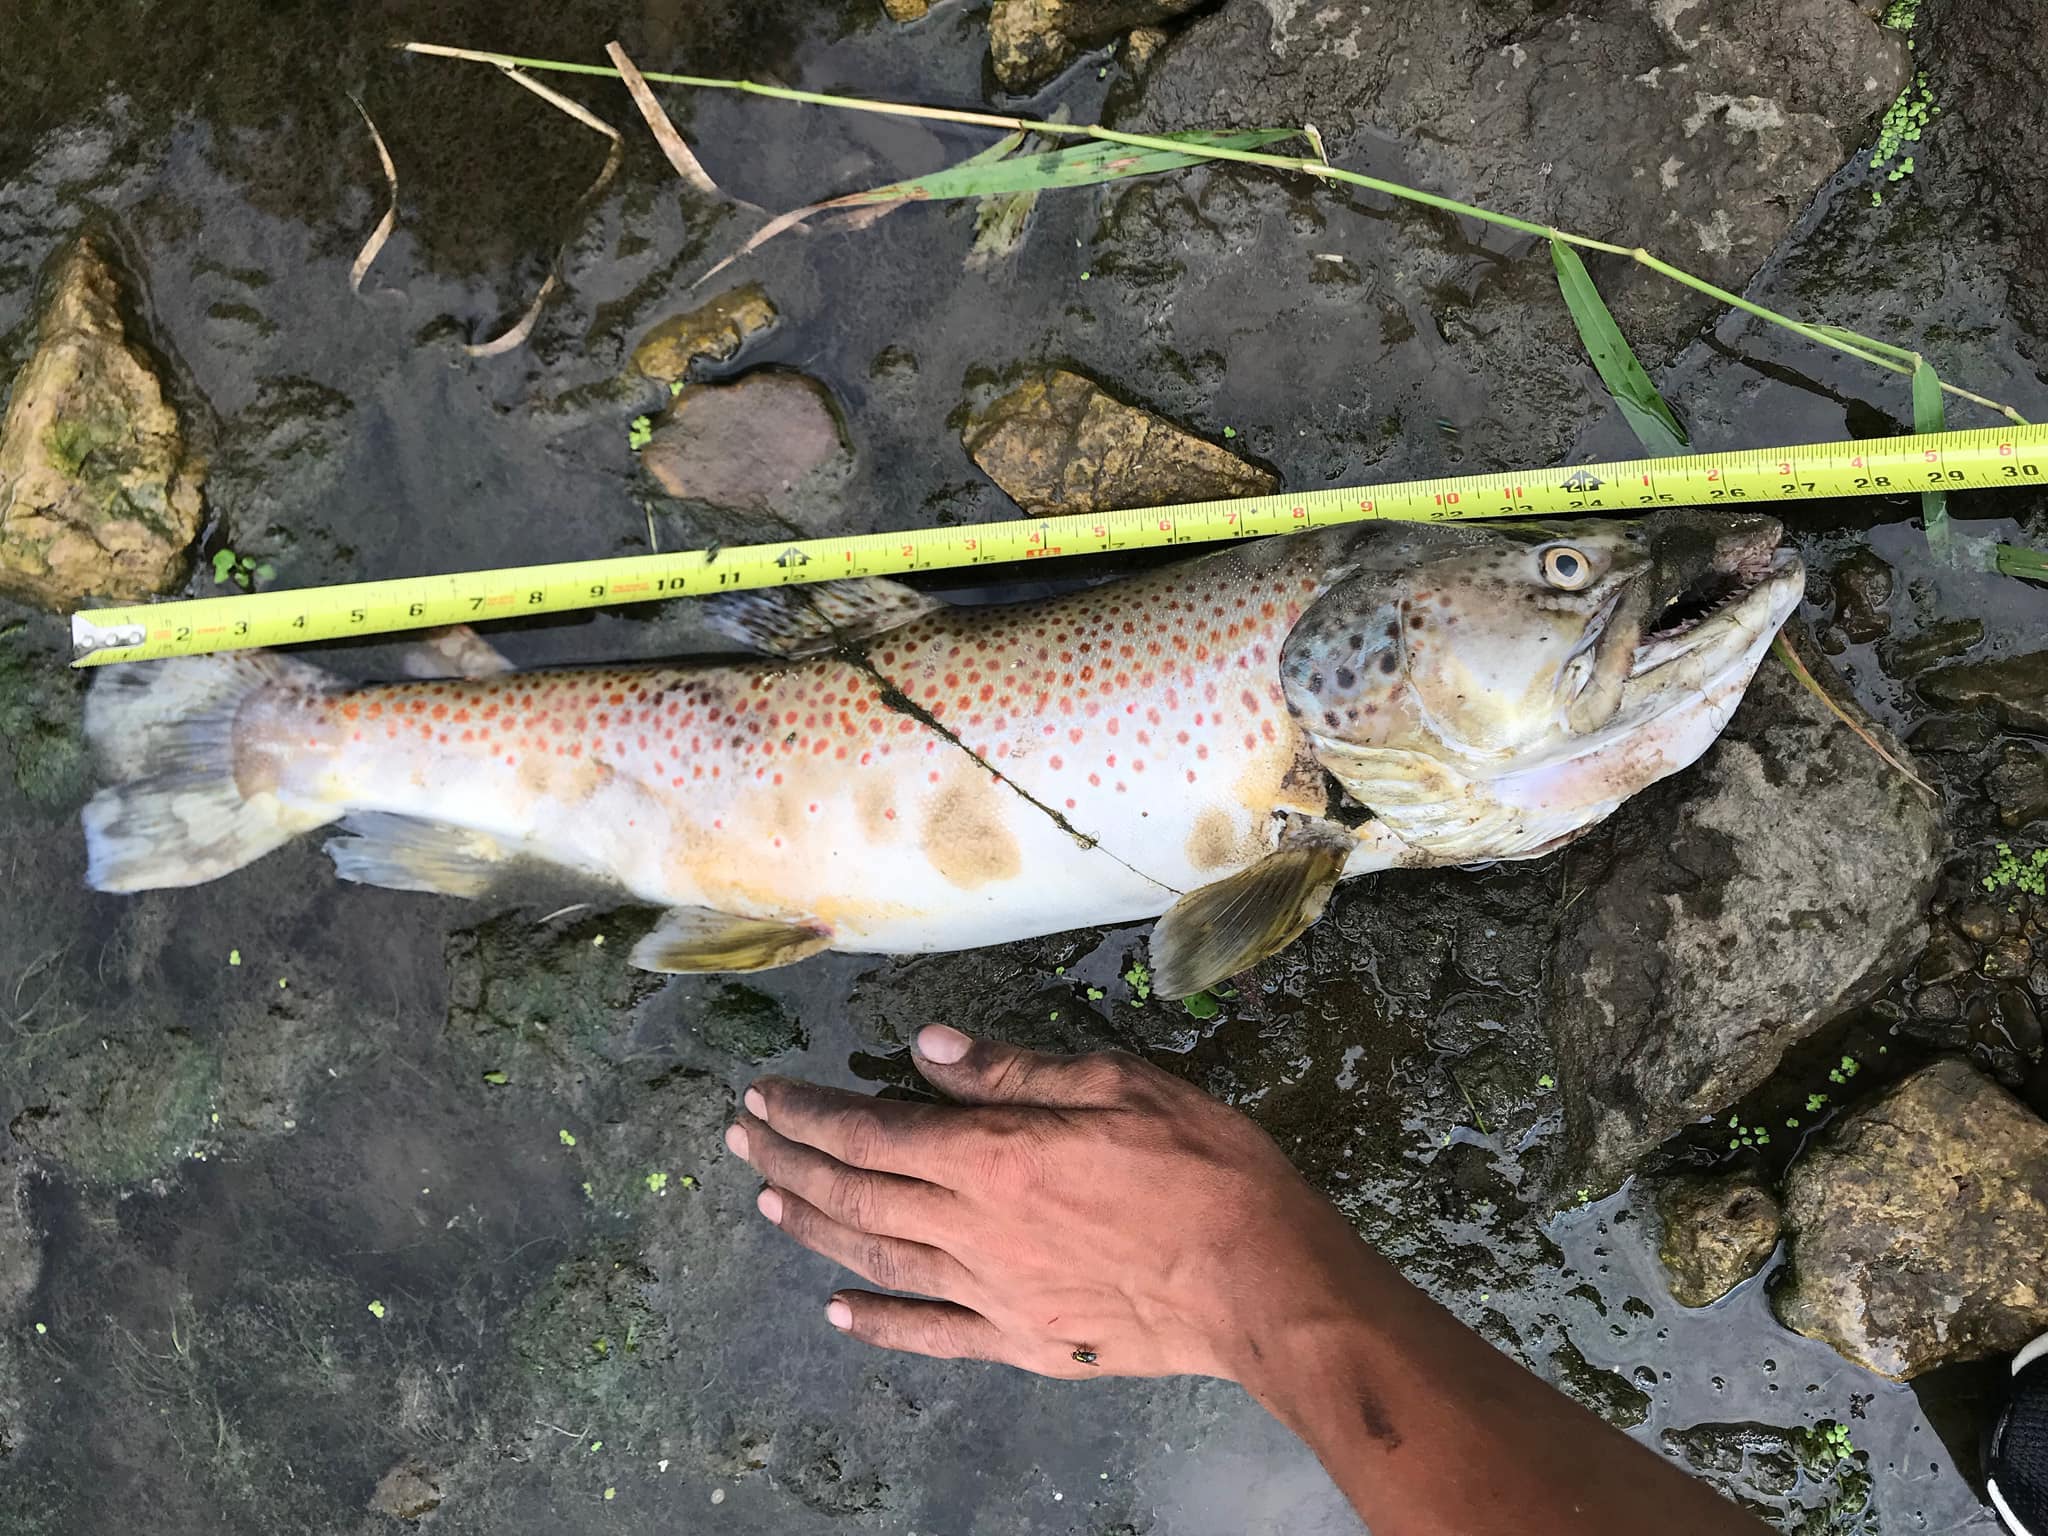 Fish Kill Hits Famed Trout Stream in Minnesota